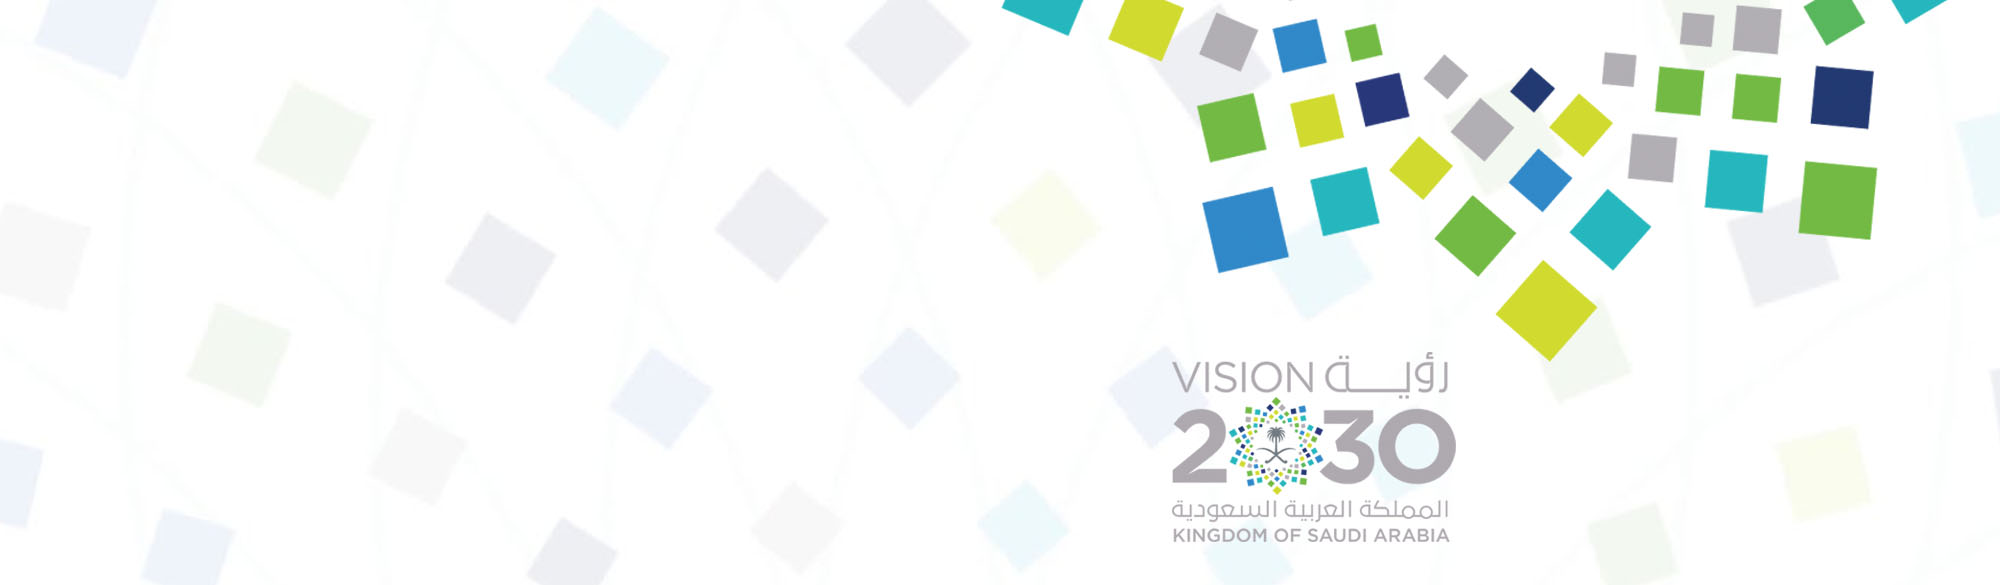 Vision 2030 KSA